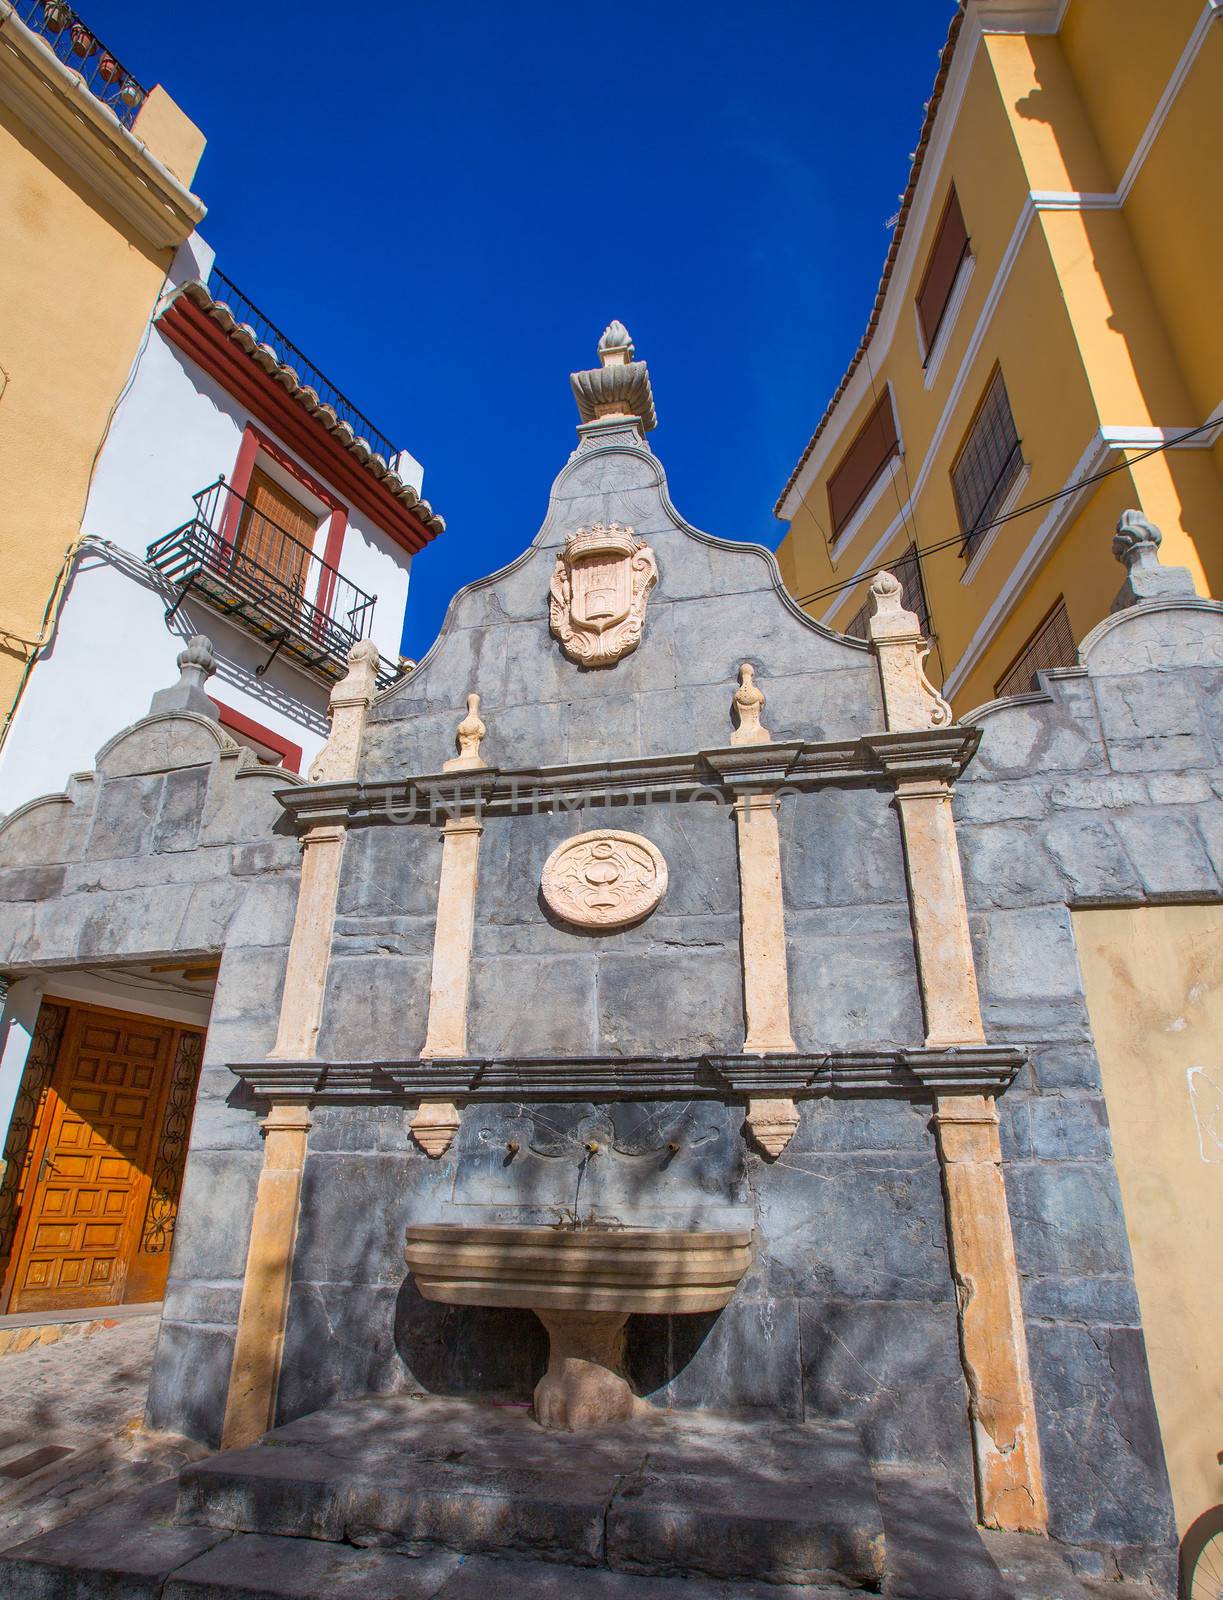 Jerica Castellon village fountain in Alto Palancia of Spain Valencian Community